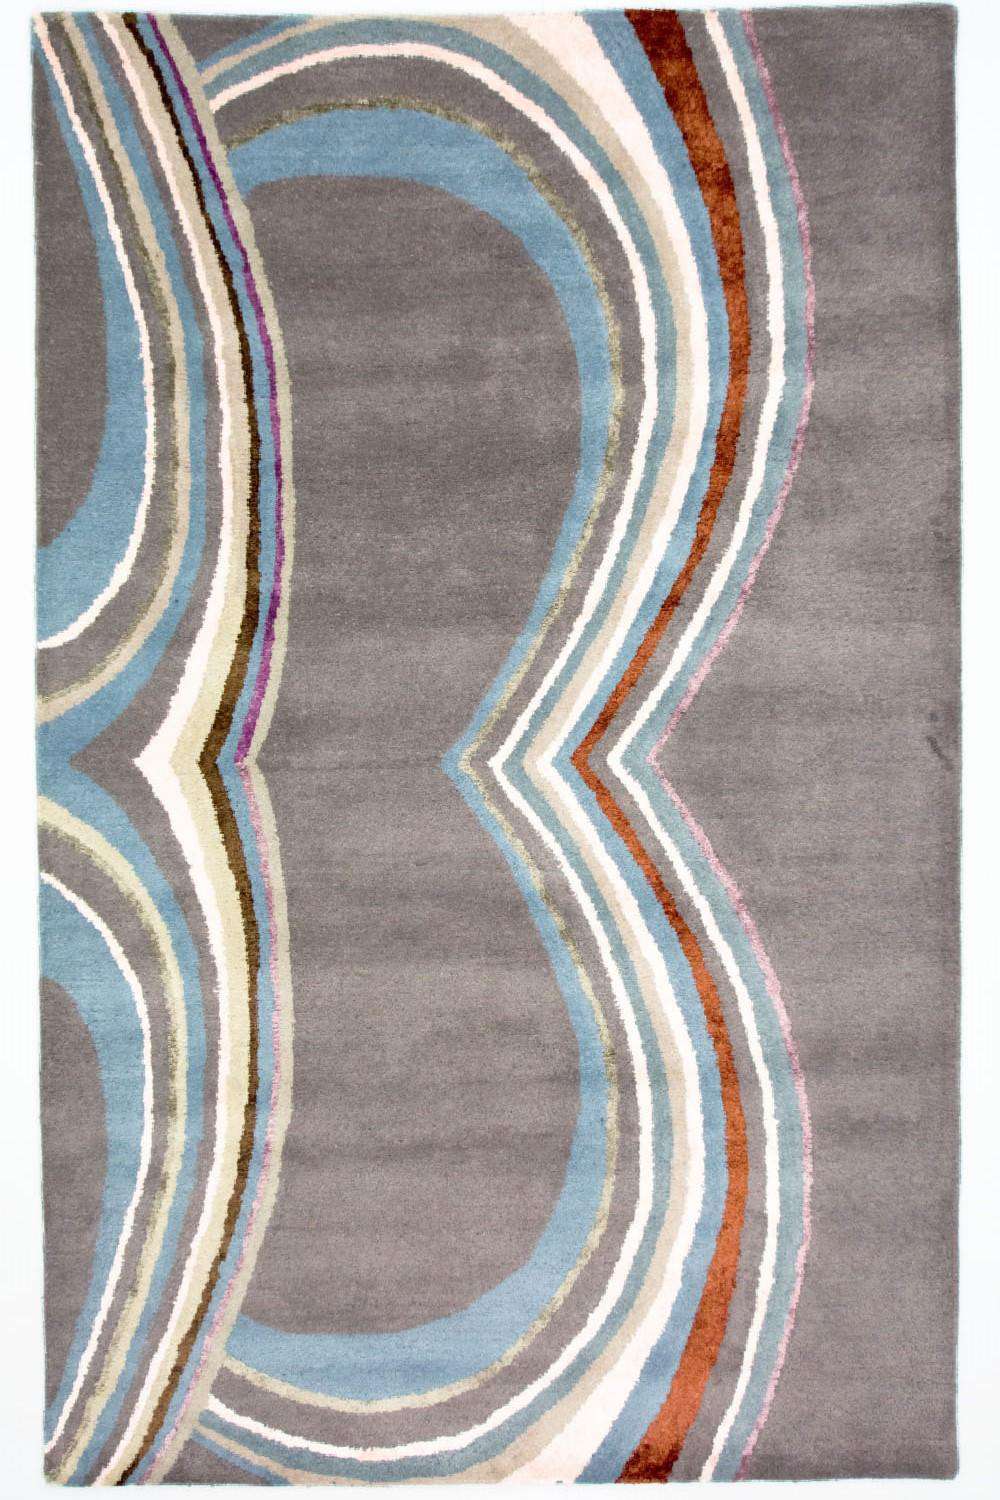 Designer Rug - 241 x 153 cm - multicolored